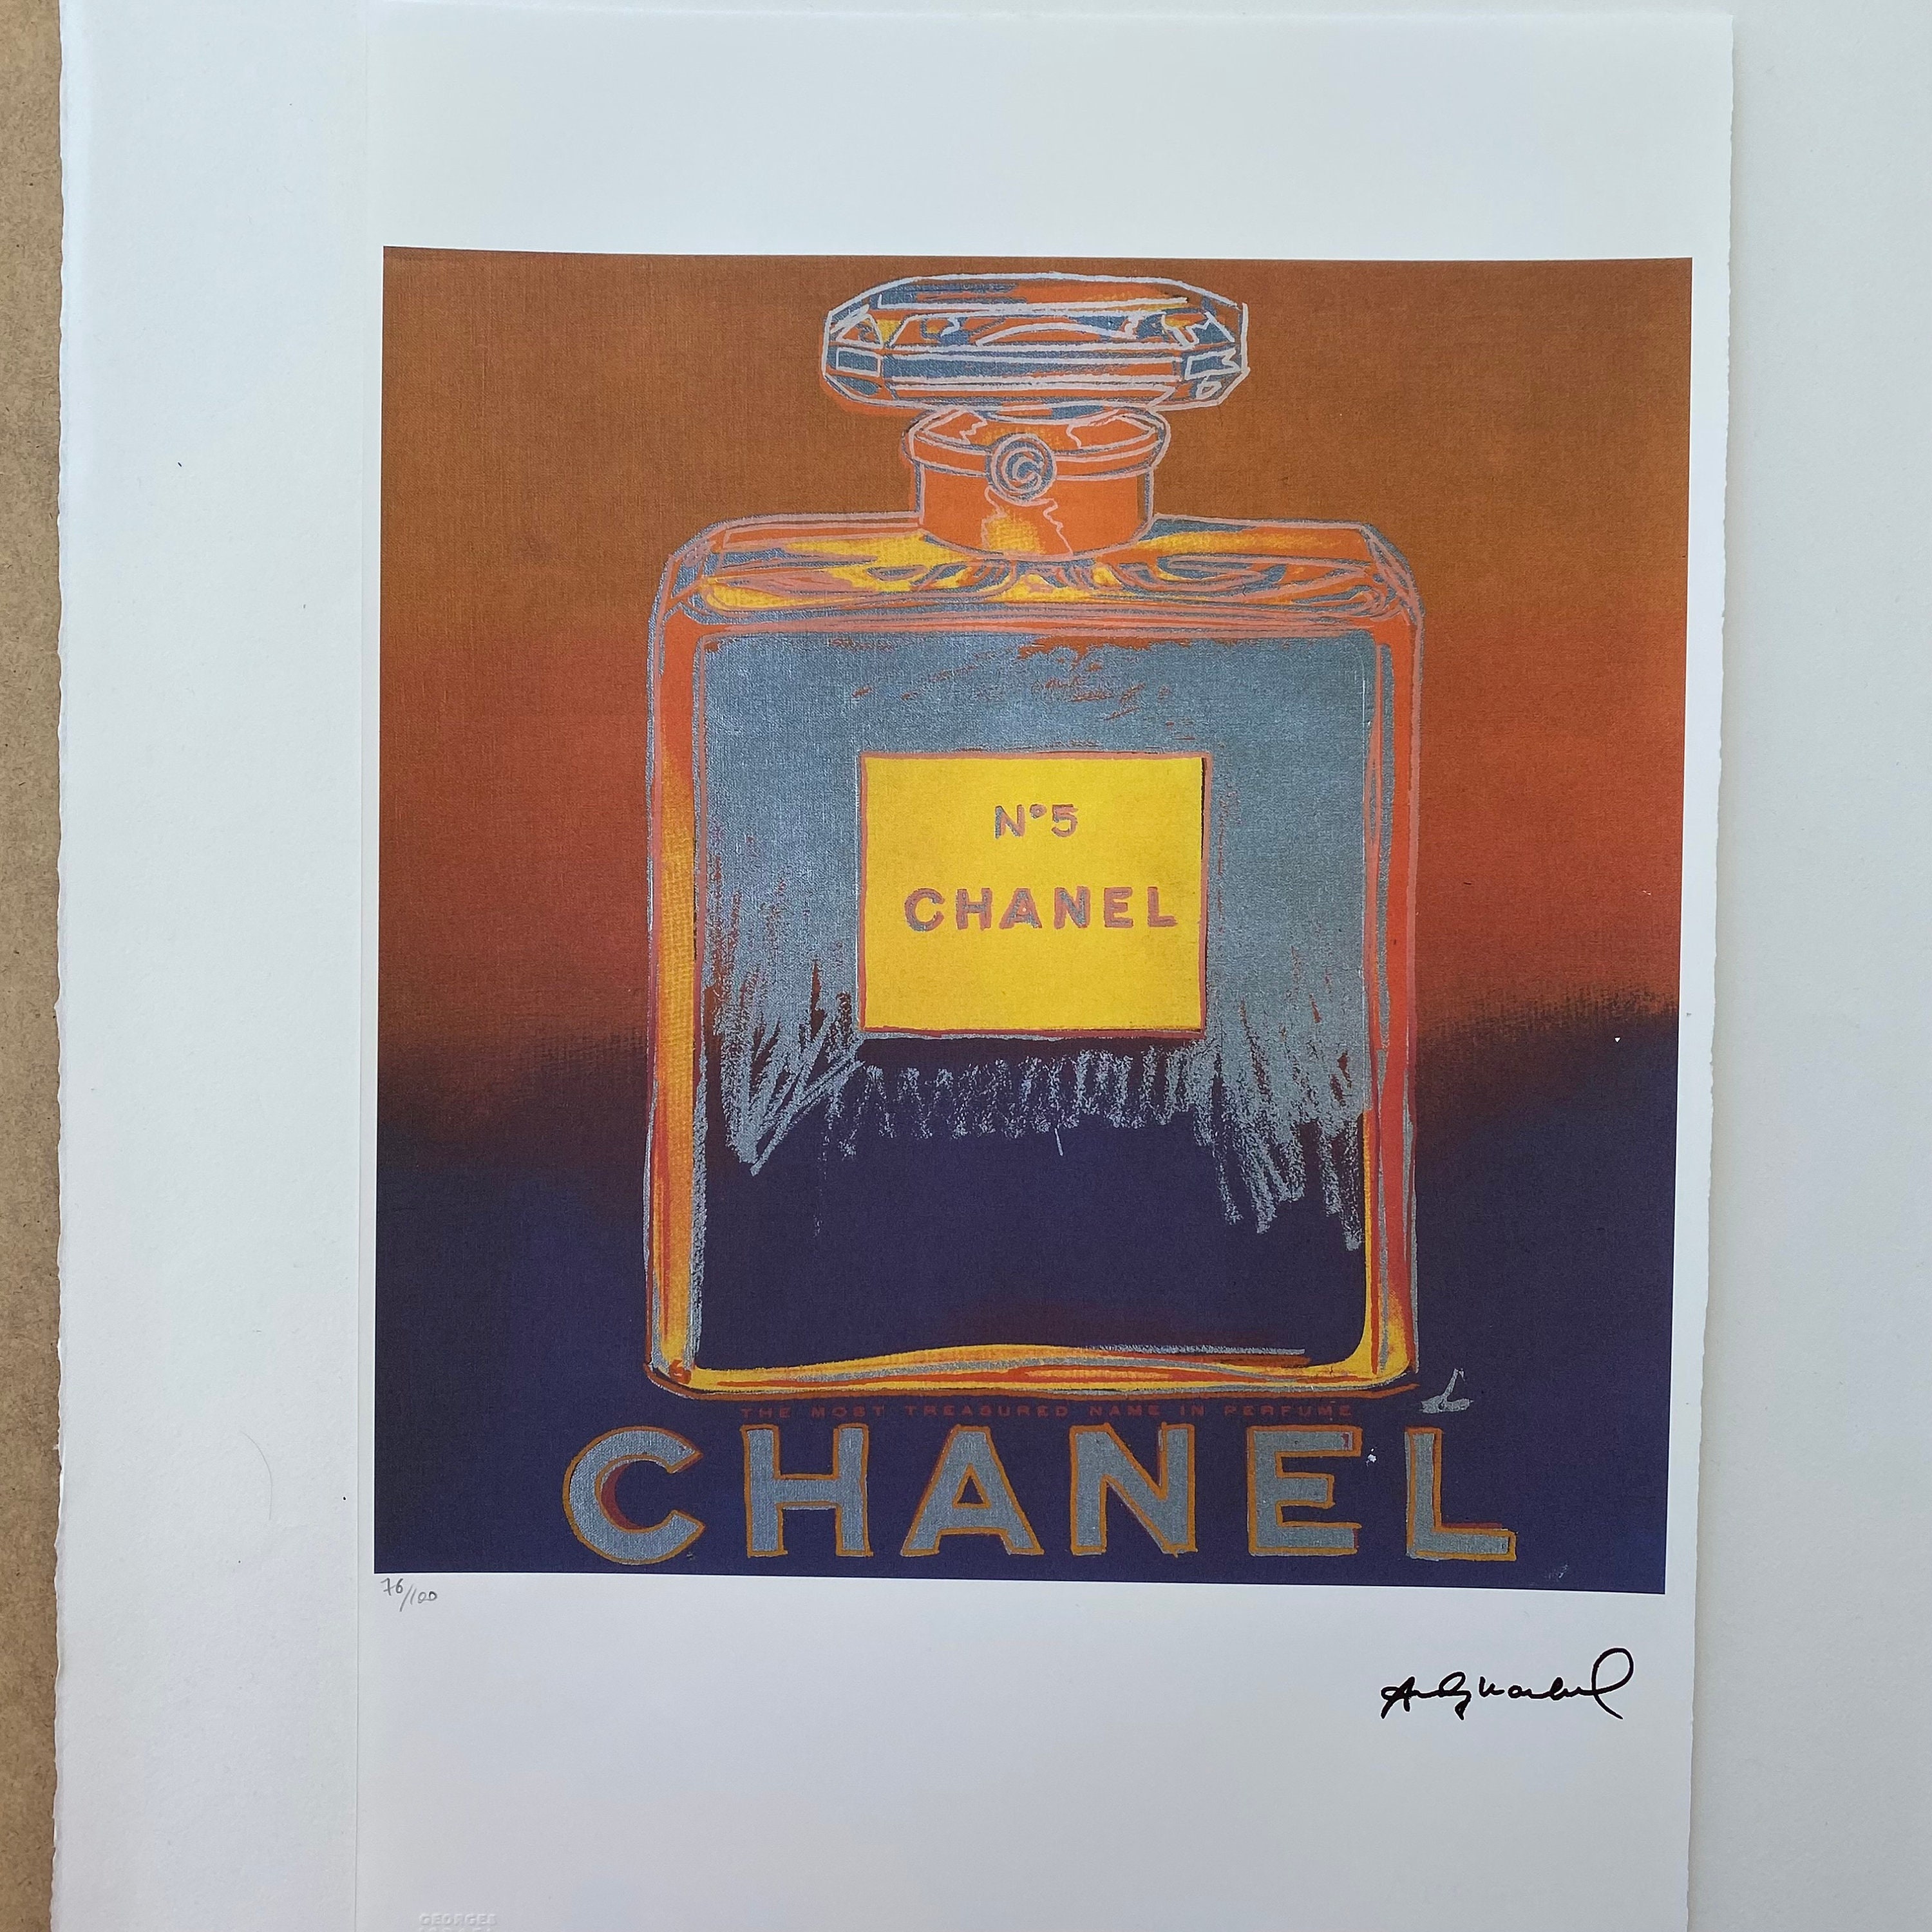 Chanel Edition 